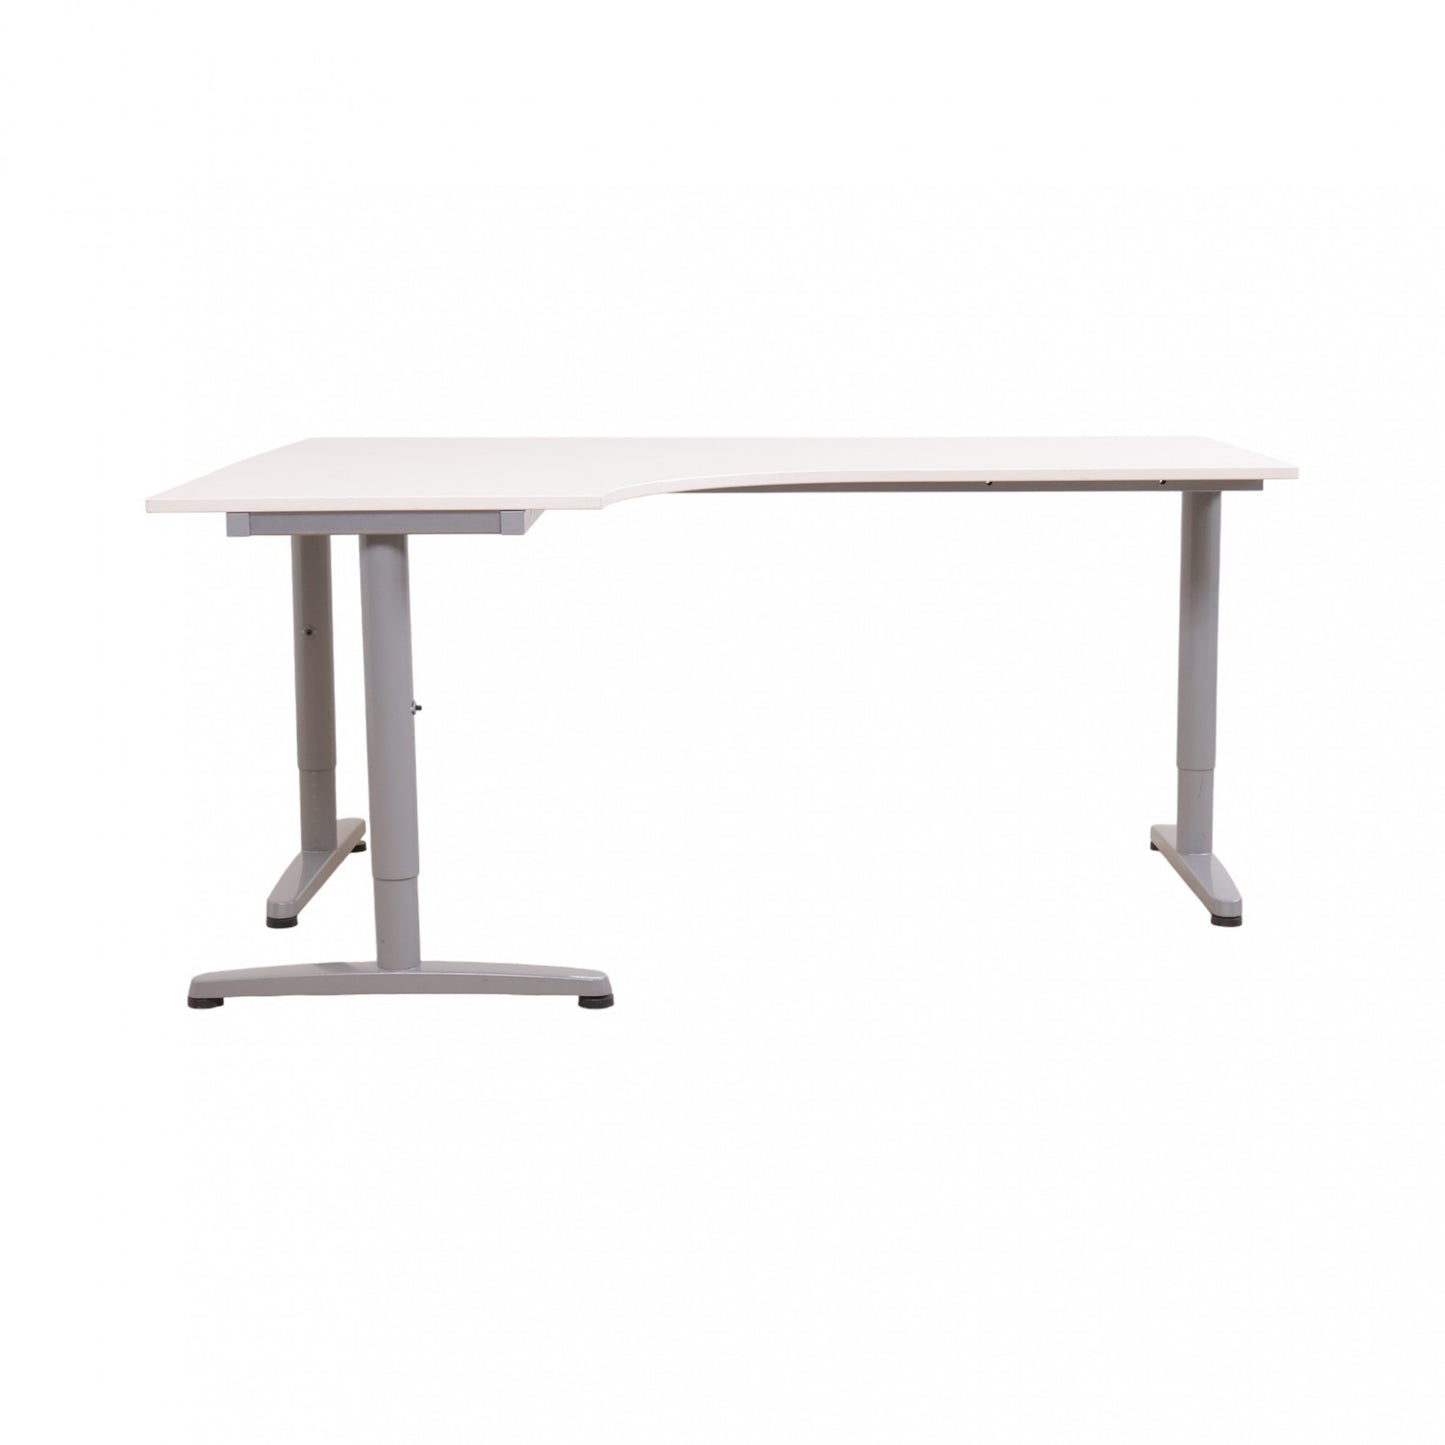 160x120 cm, Galant skrivebord med venstresving